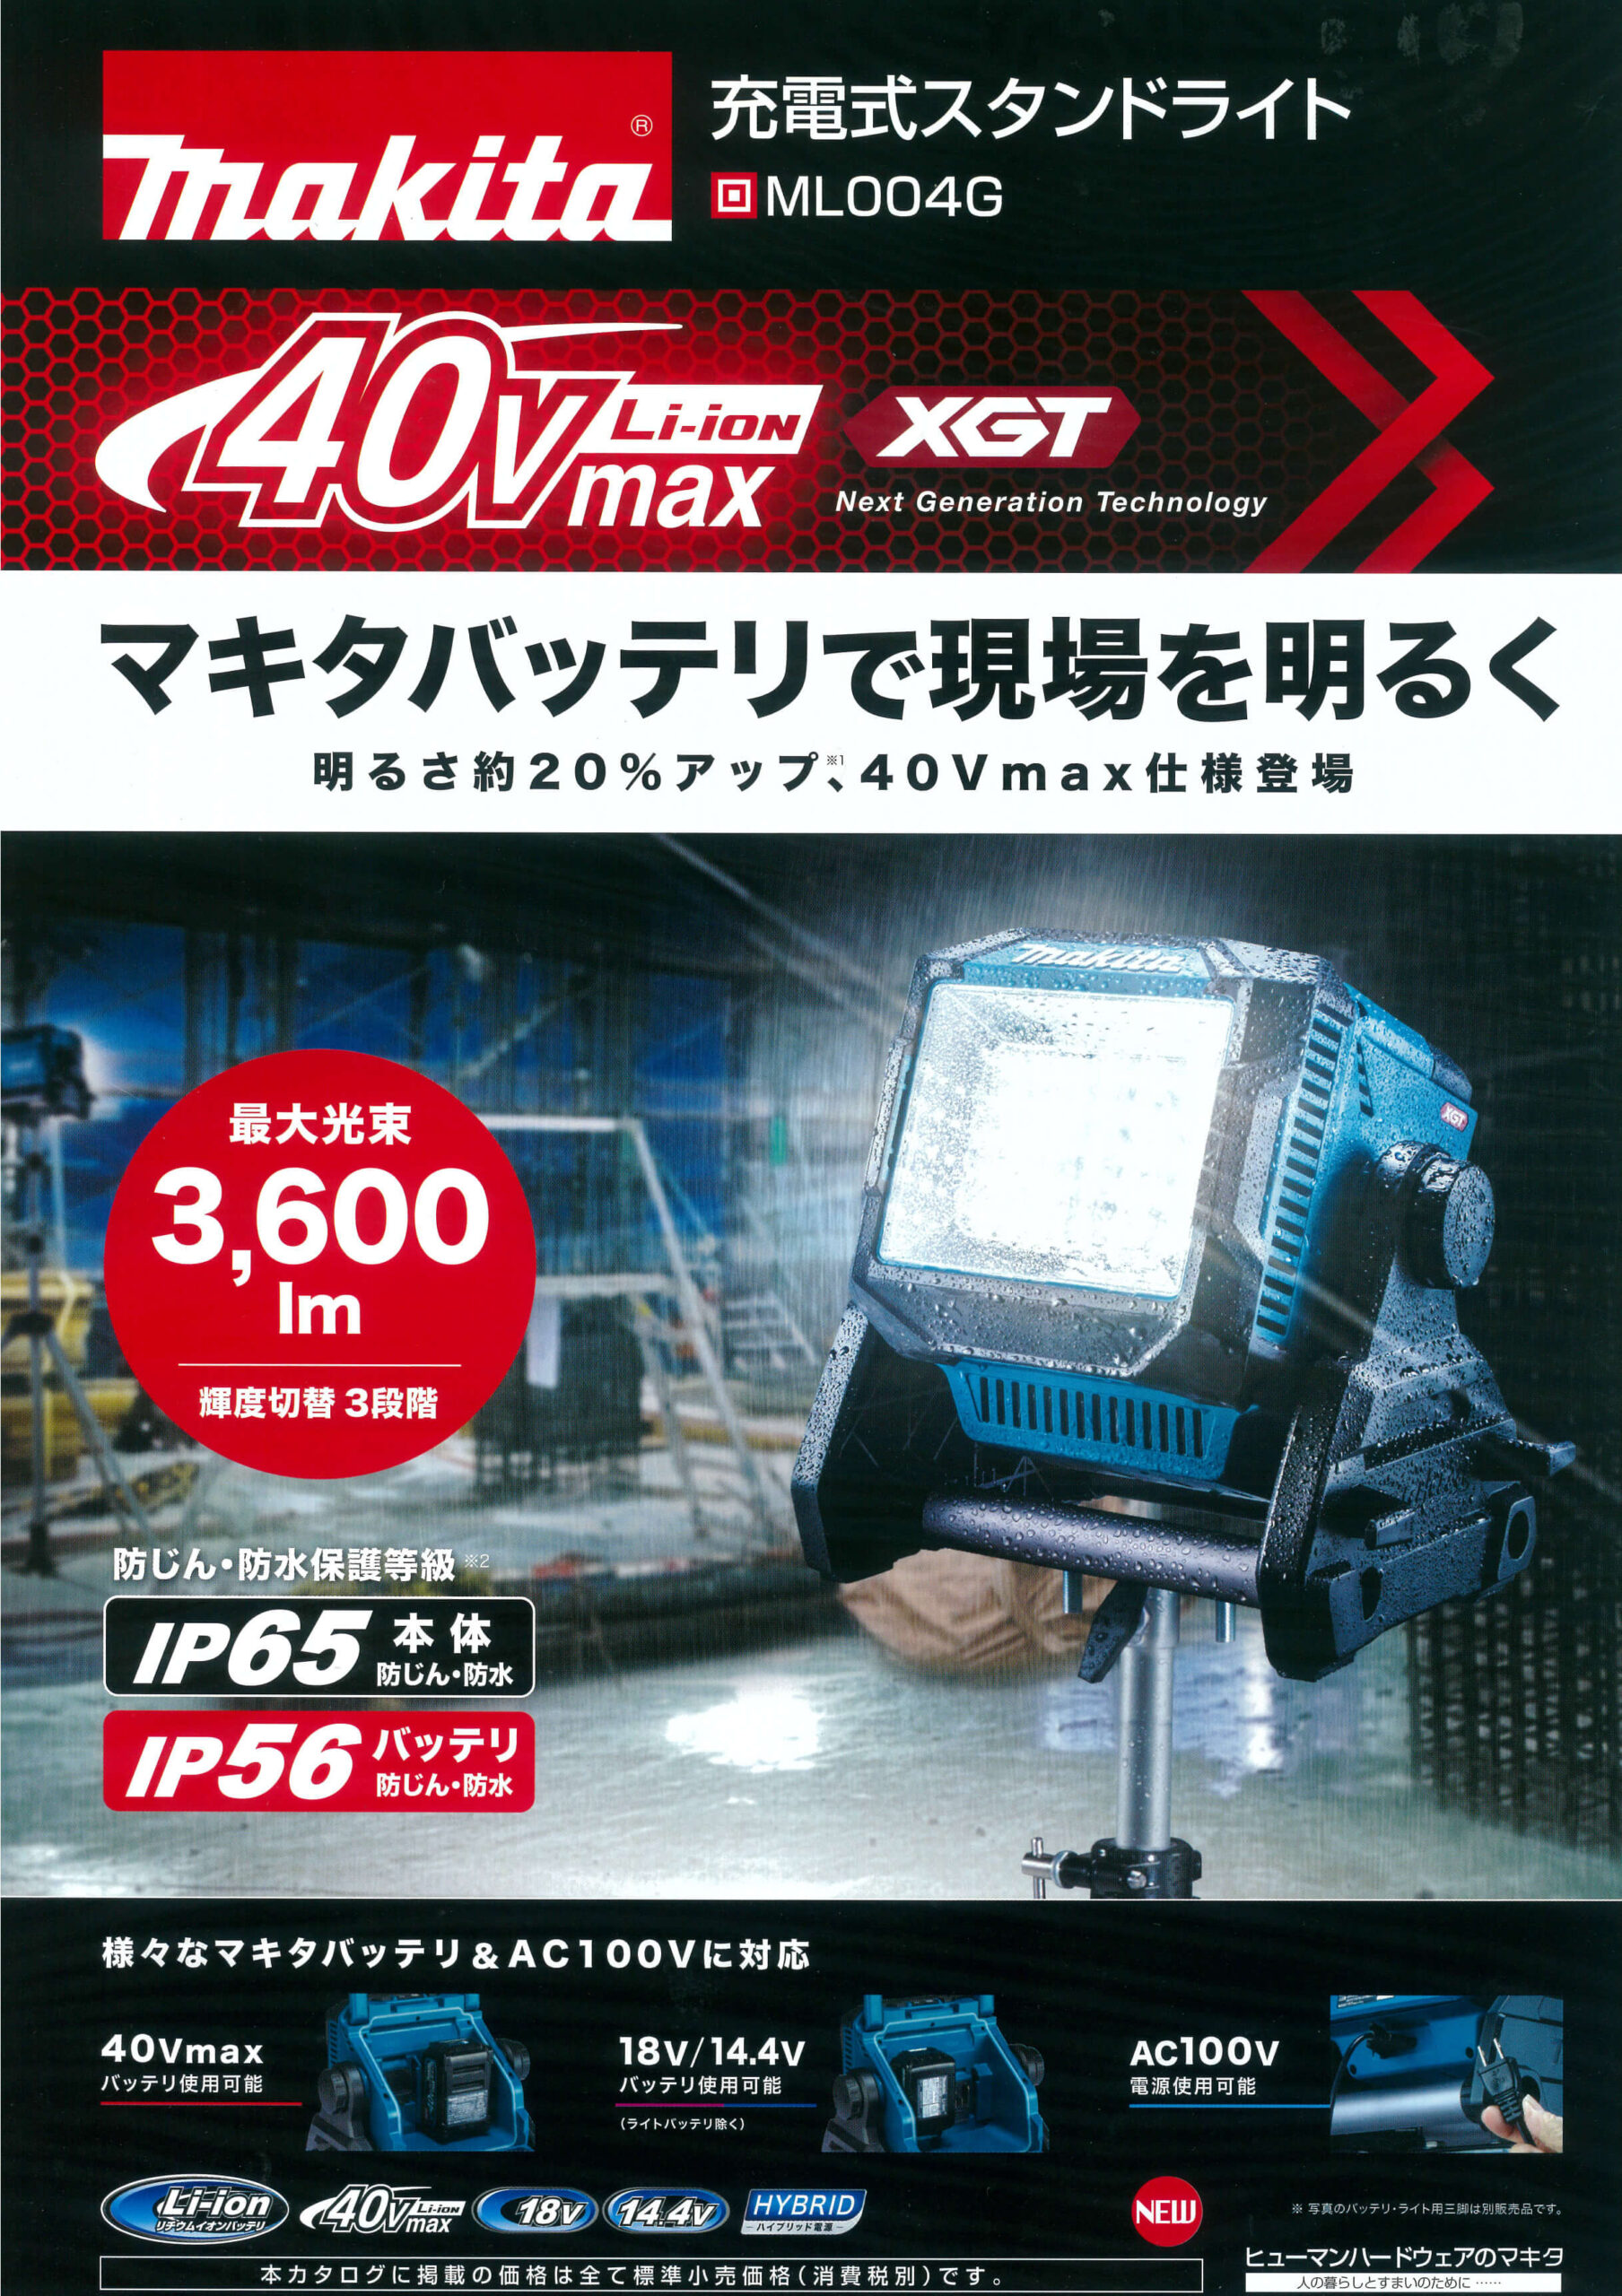 マキタ ML004G 40Vmax充電式スタンドライトを【徹底解説】